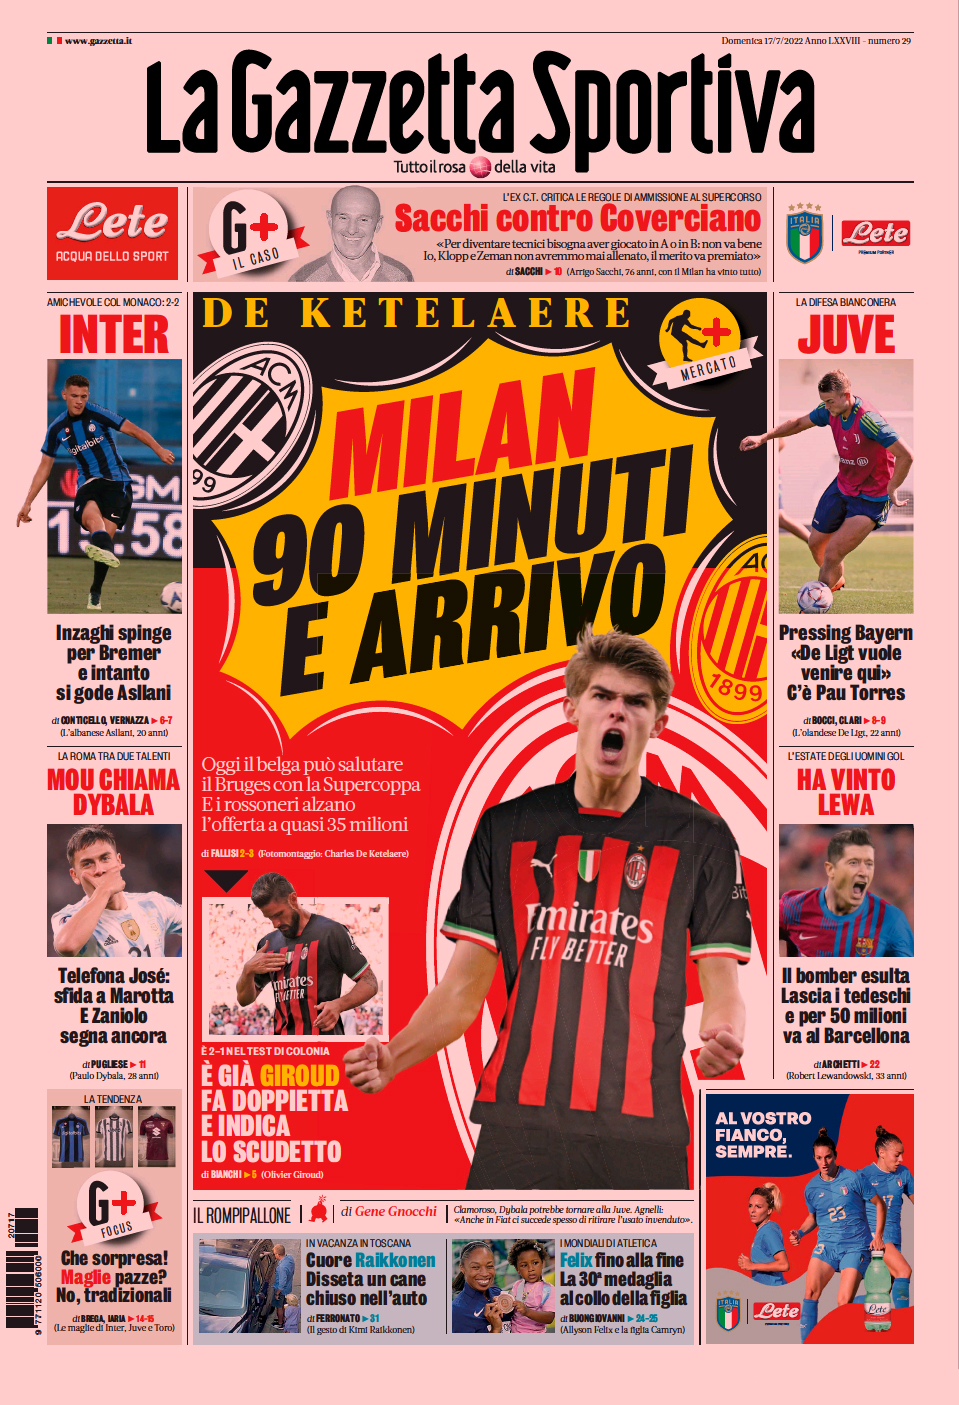 Дибала-«Рома», до крайности. Заголовки Gazzetta, TuttoSport и Corriere за 17 июля